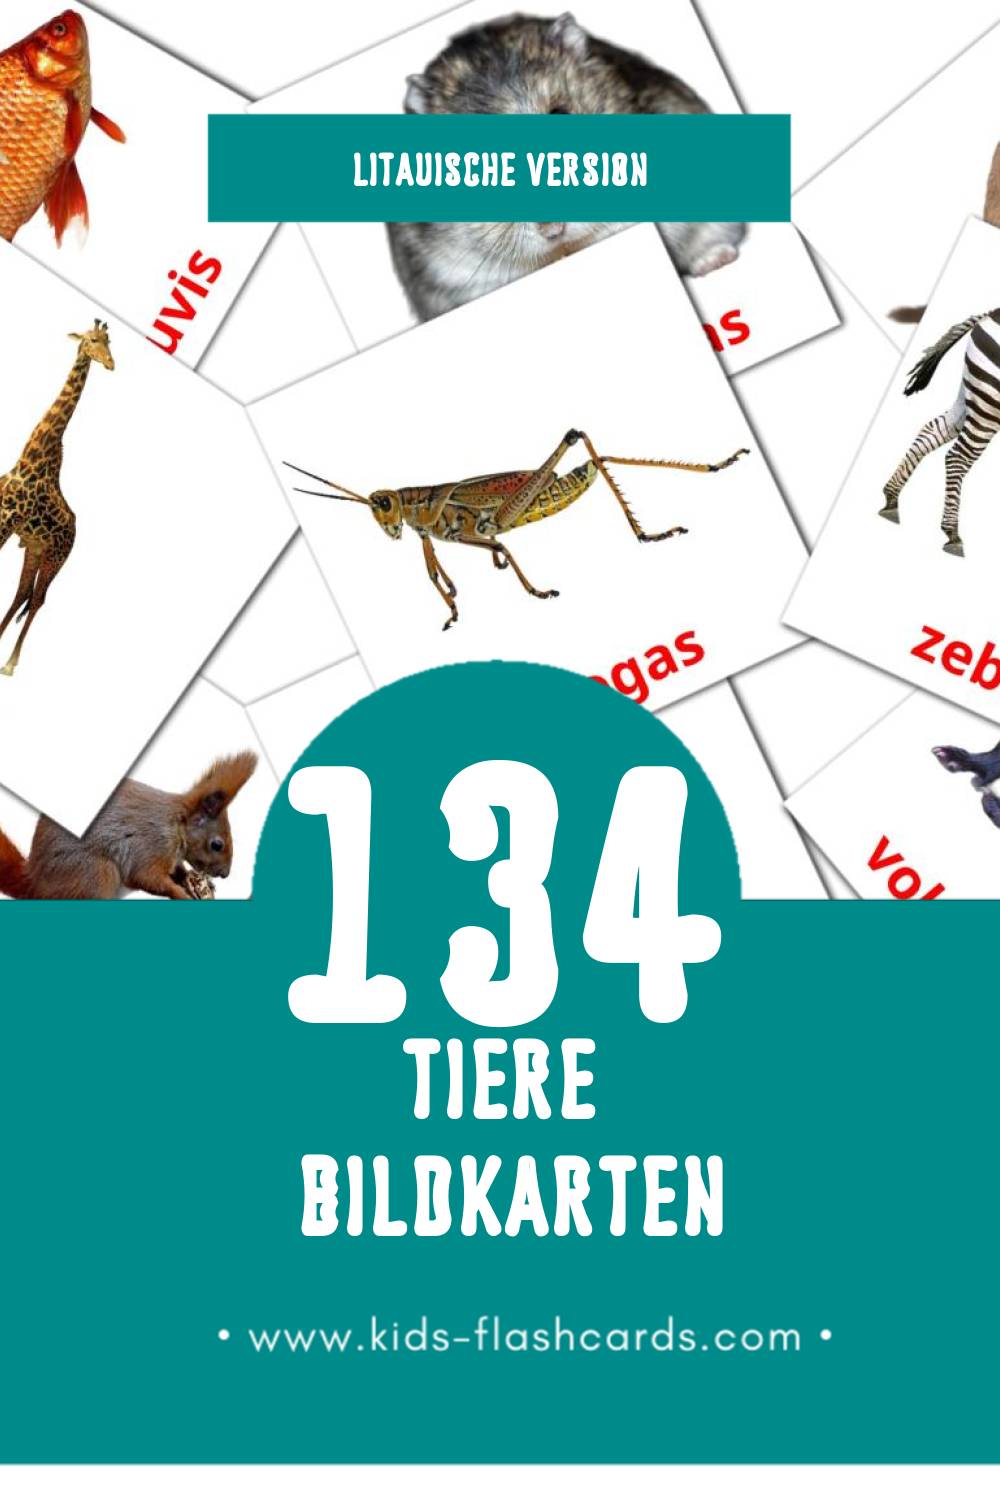 Visual Gyvūnai Flashcards für Kleinkinder (134 Karten in Litauisch)